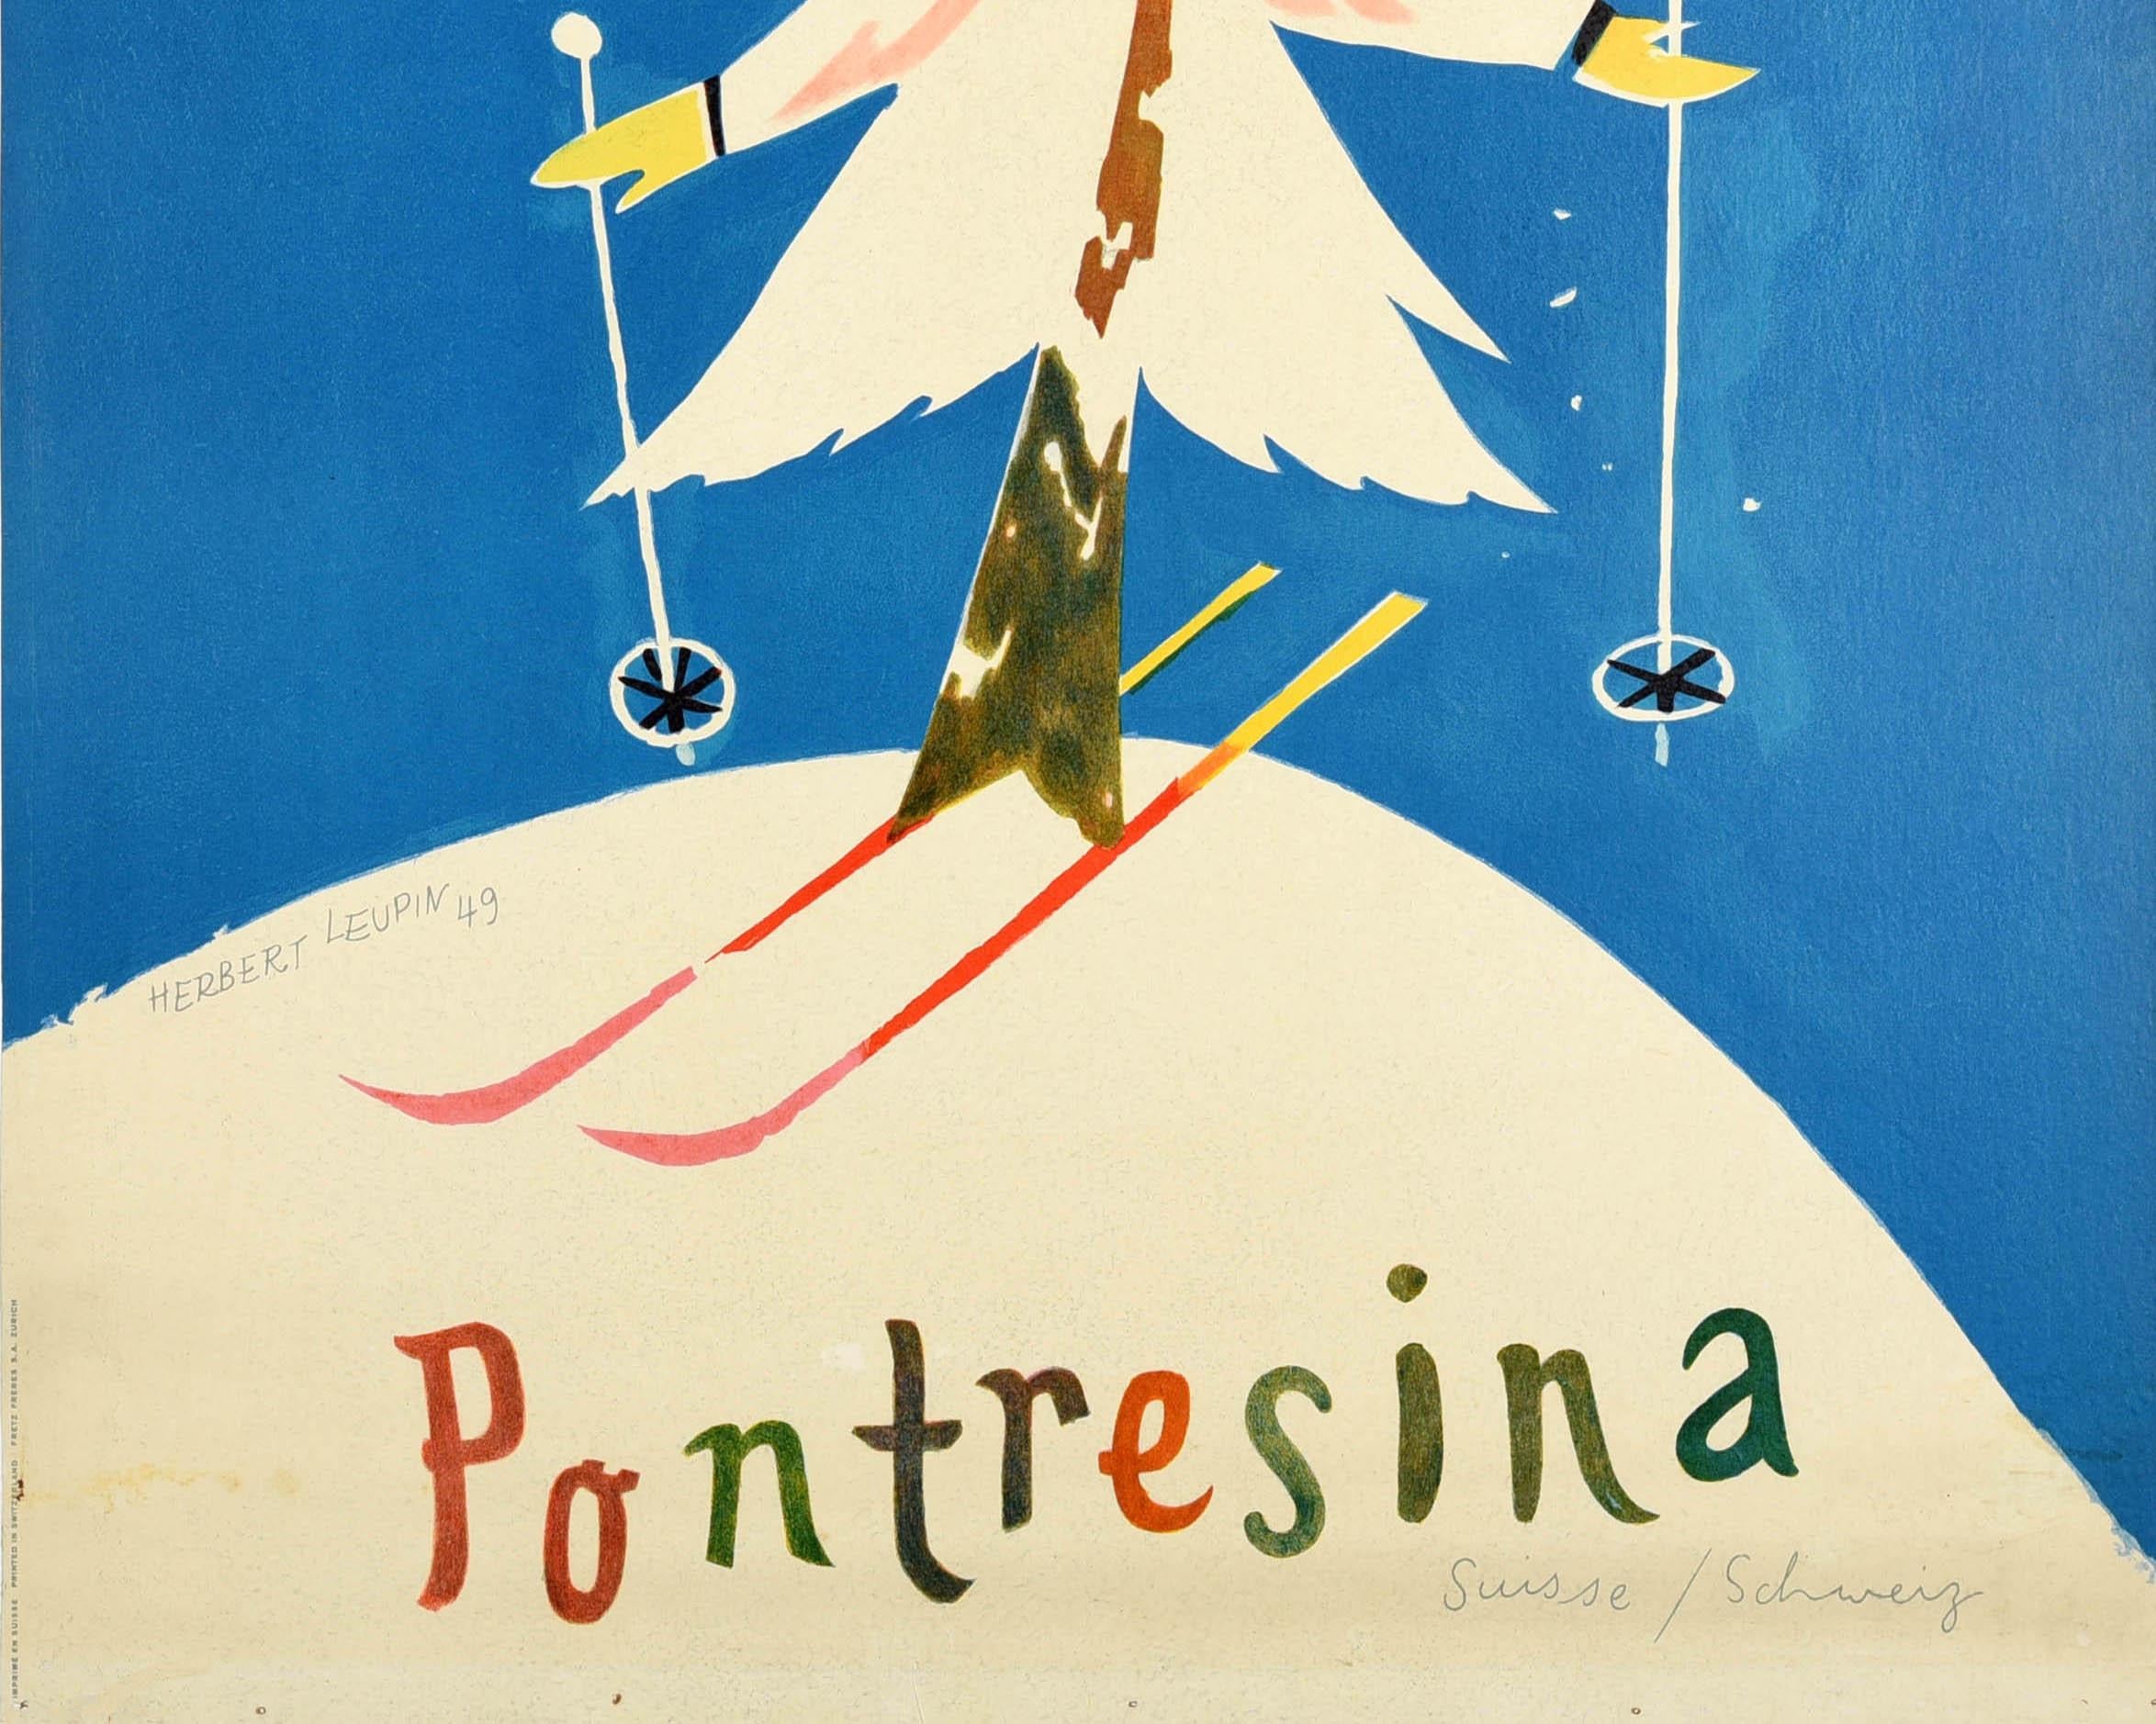 Affiche originale de sports d'hiver pour la station populaire de Pontresina en Suisse. L'illustration amusante et colorée, réalisée par le célèbre affichiste suisse Herbert Leupin (1916-1999), représente un arbre enneigé faisant du ski, dont la tête